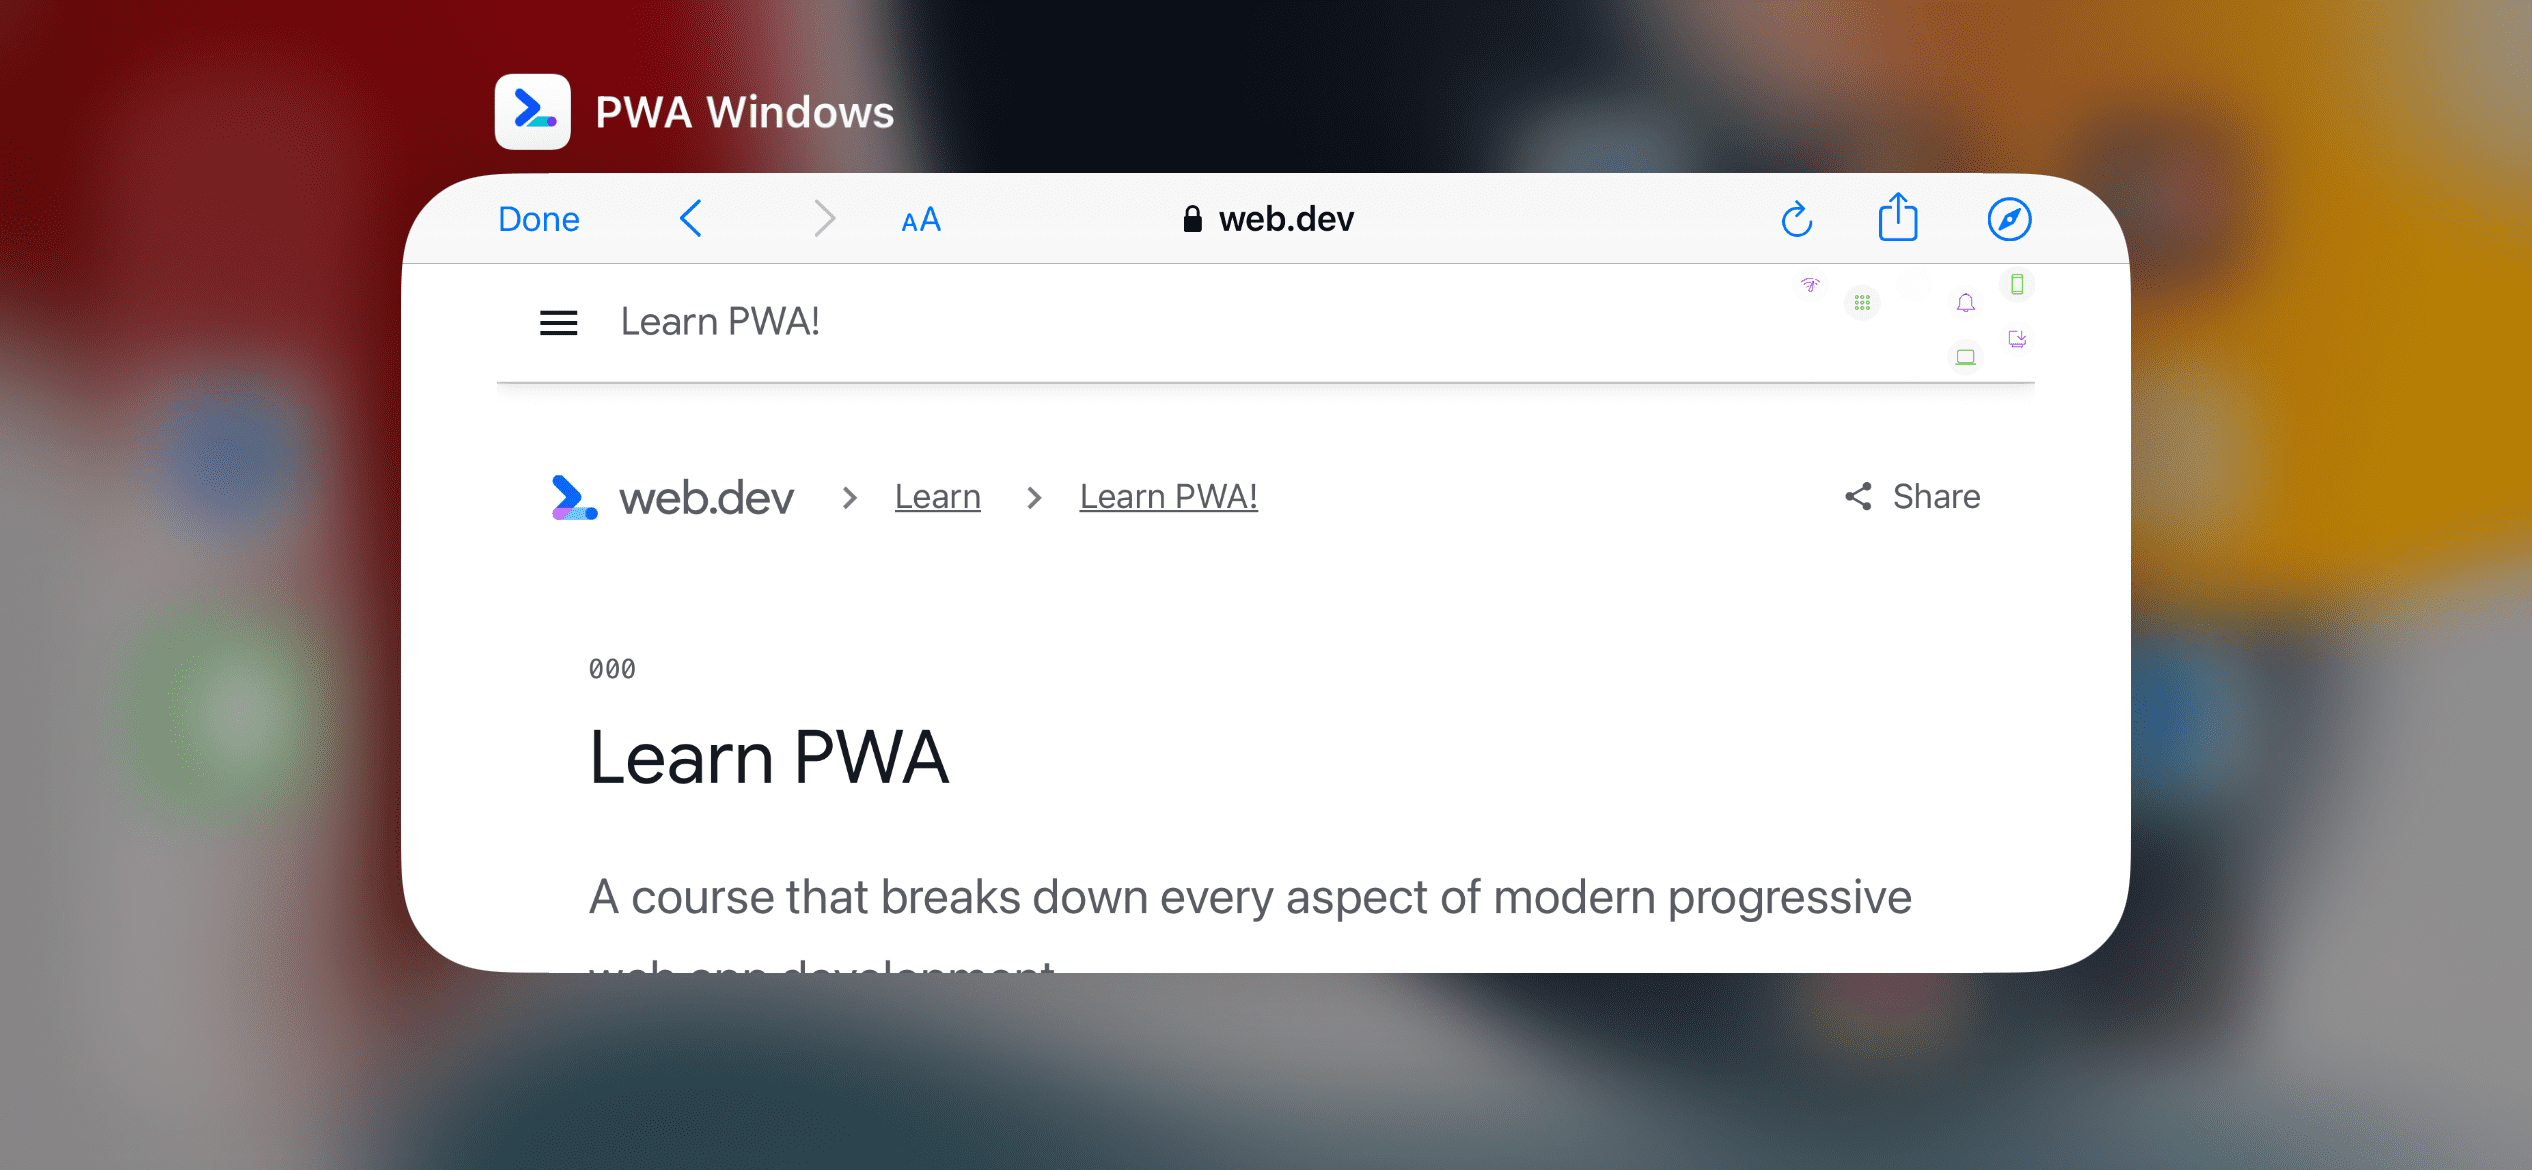 Một trình duyệt trong ứng dụng trên iPhone khi duyệt xem một URL nằm ngoài phạm vi của một PWA độc lập.